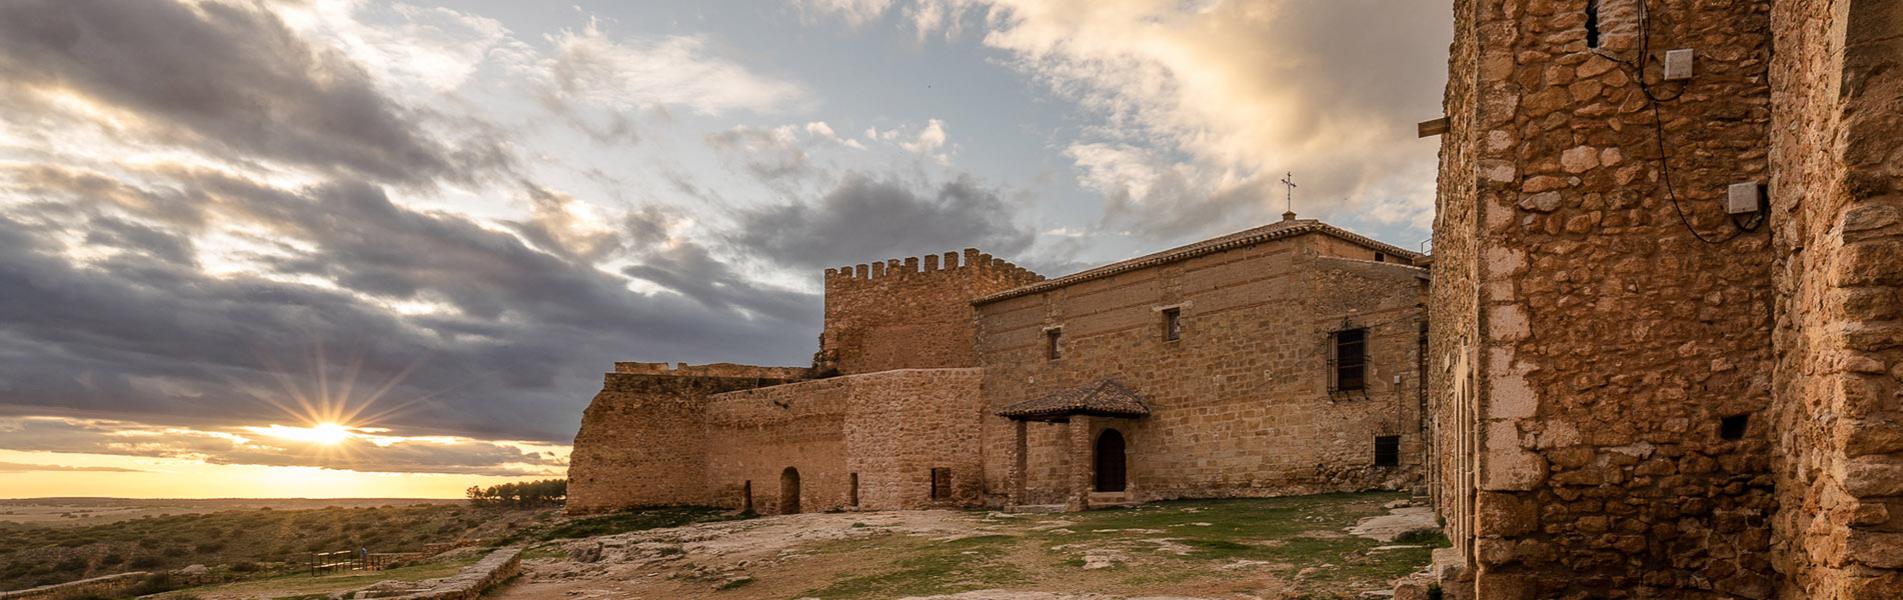 Castillo de Peñarroya 2